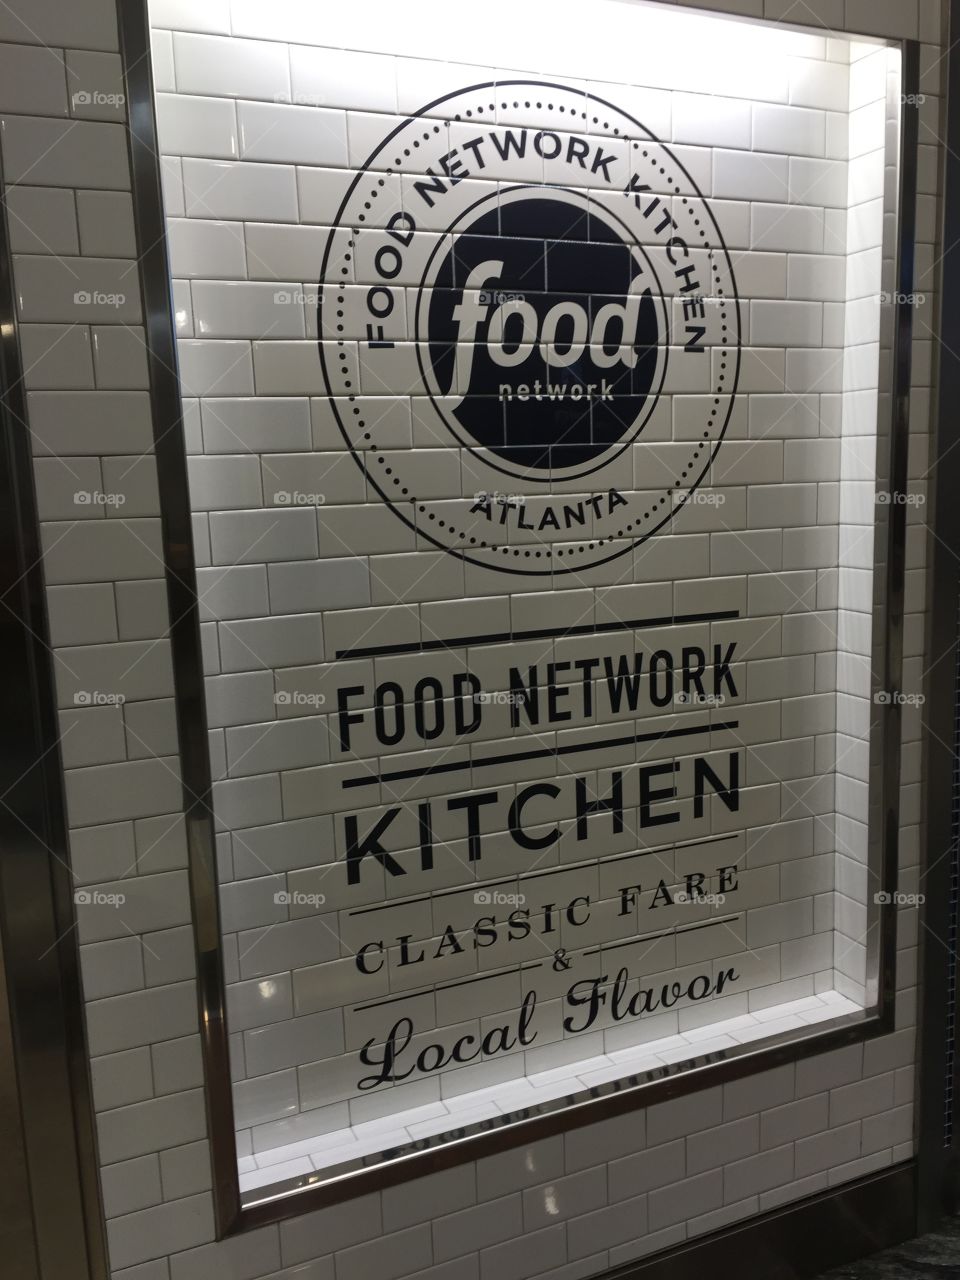 Food network kitchen